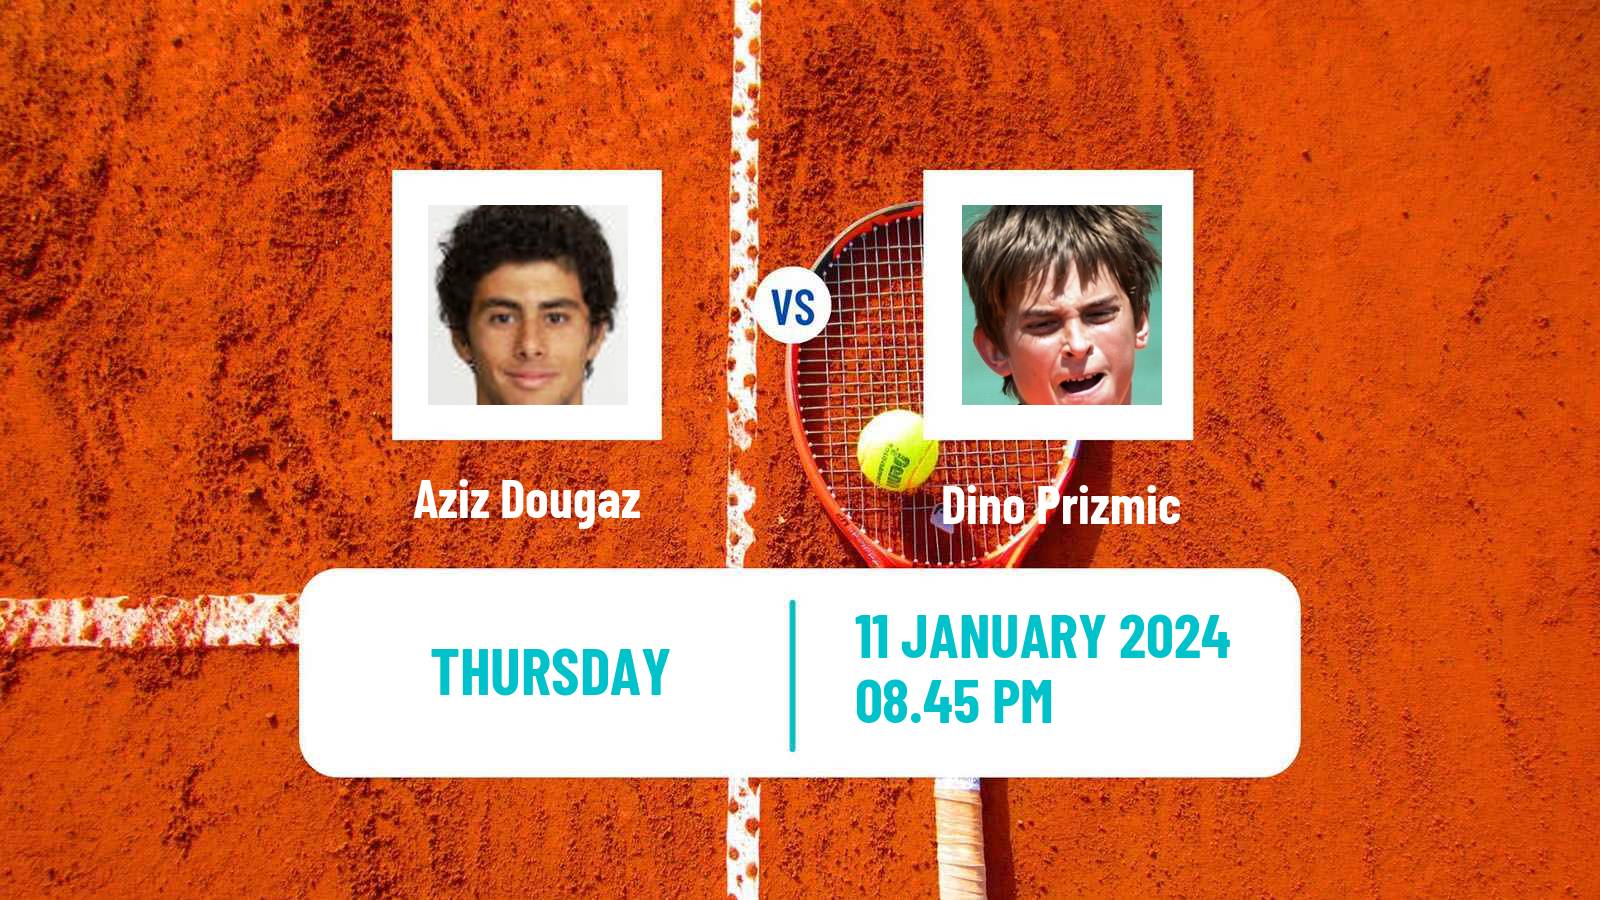 Tennis ATP Australian Open Aziz Dougaz - Dino Prizmic